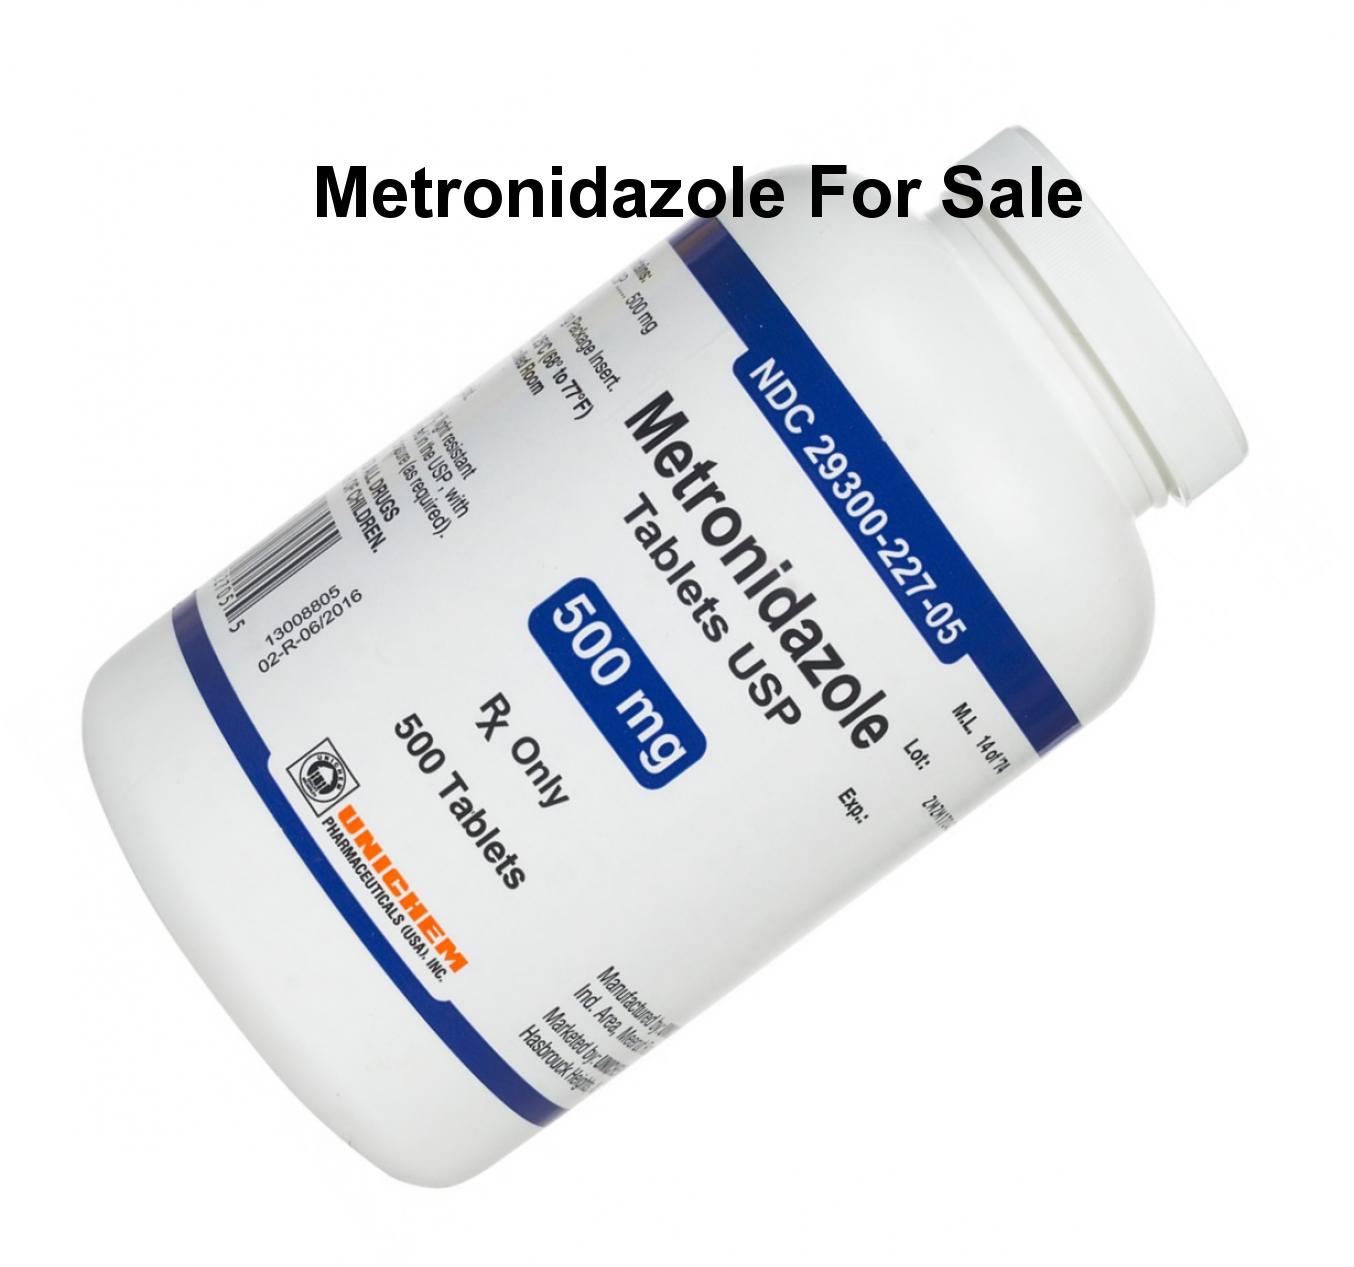 Buying metronidazole